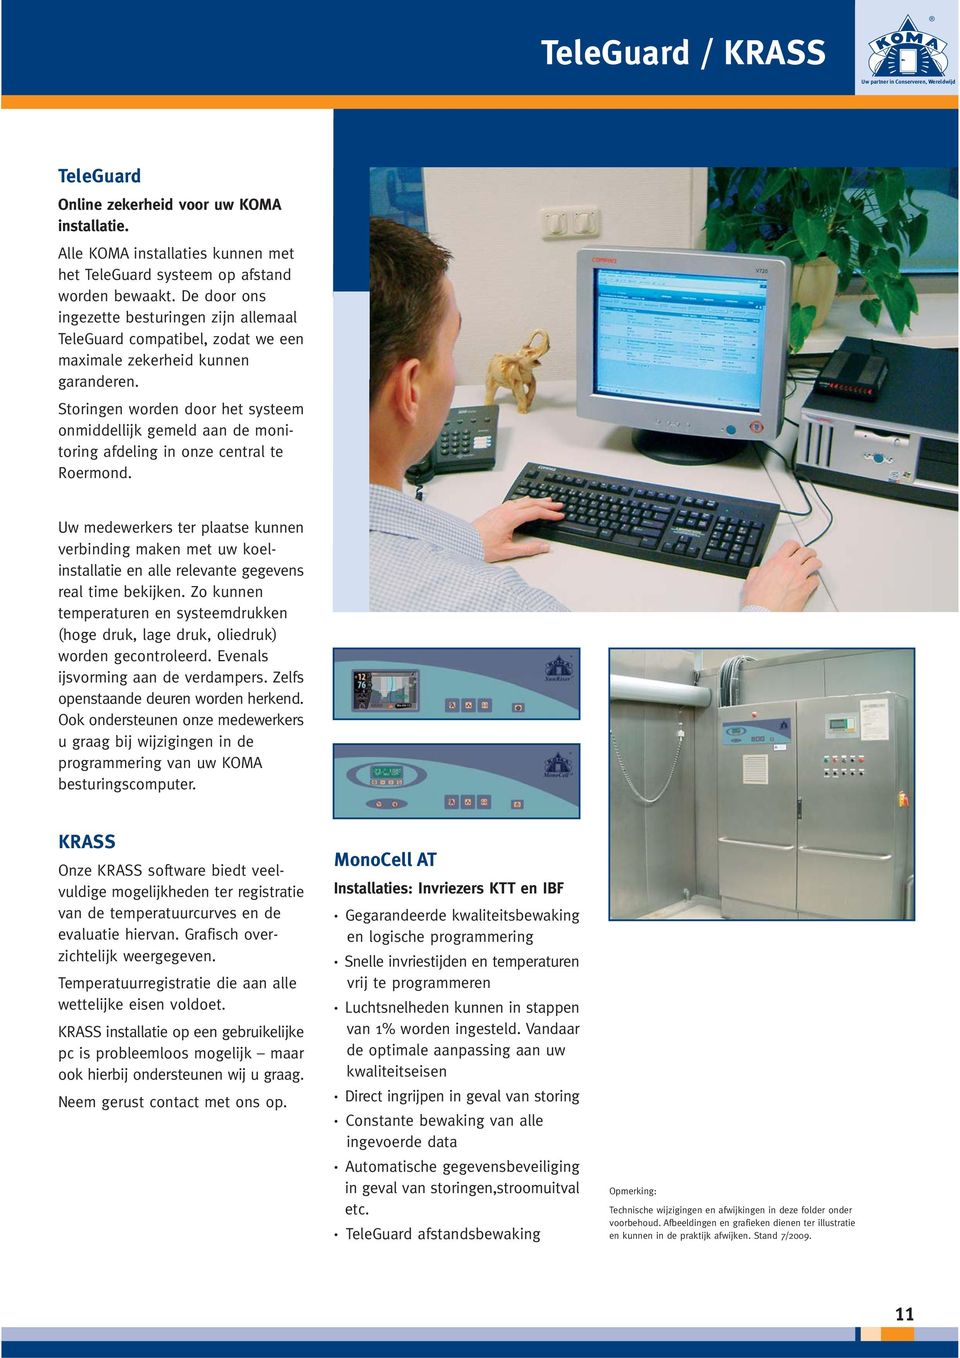 Storingen worden door het systeem onmiddellijk gemeld aan de monitoring afdeling in onze central te Roermond.